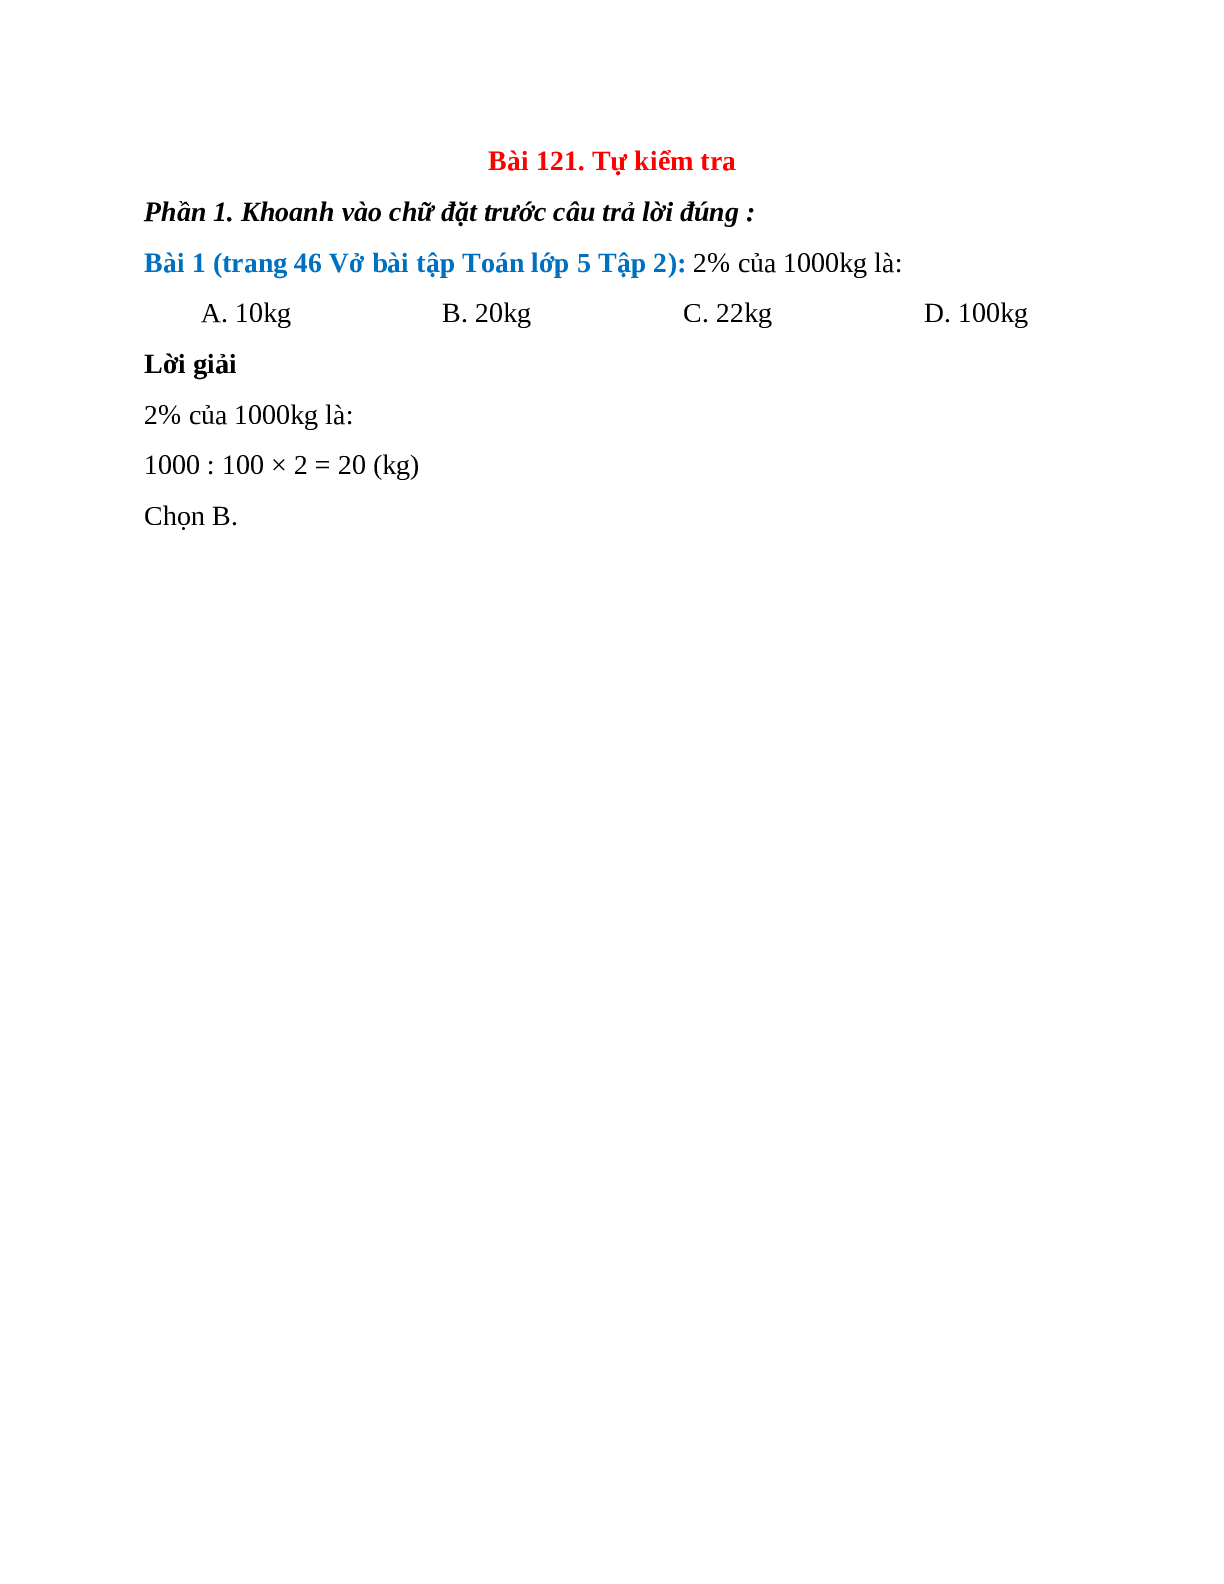 2% của 1000kg là: A. 10kg; B. 20kg  (trang 1)